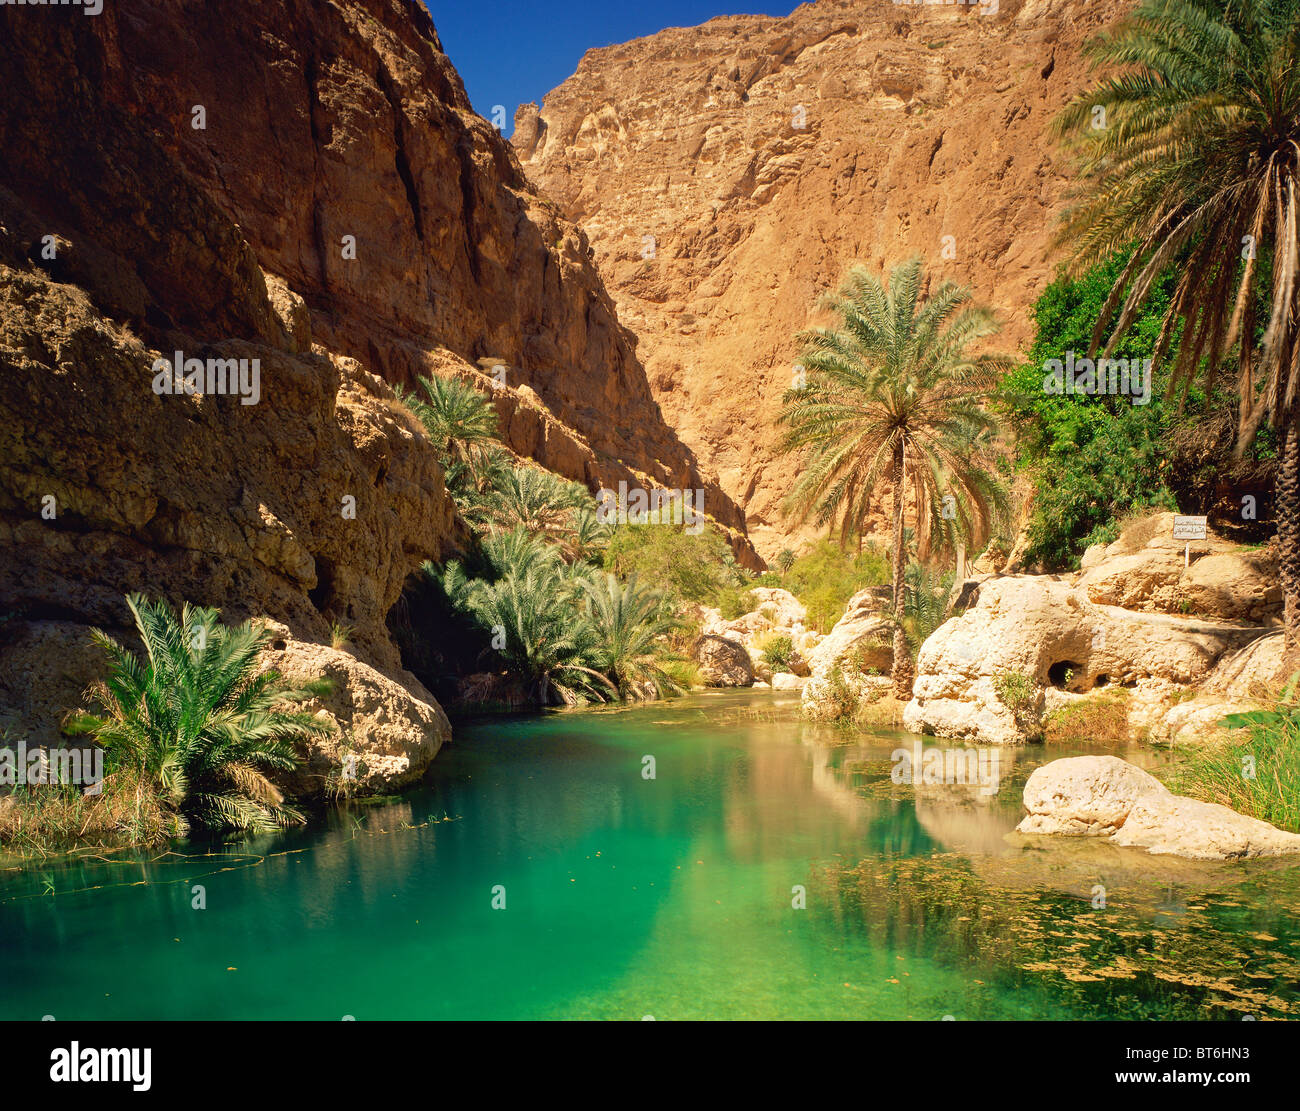 Piscine verte dans la région de Wadi Shab, Sultanat d'Oman, les canyons du désert Oman dans les montagnes, l'eau colorée par des ressorts de calcaire, dattiers Banque D'Images